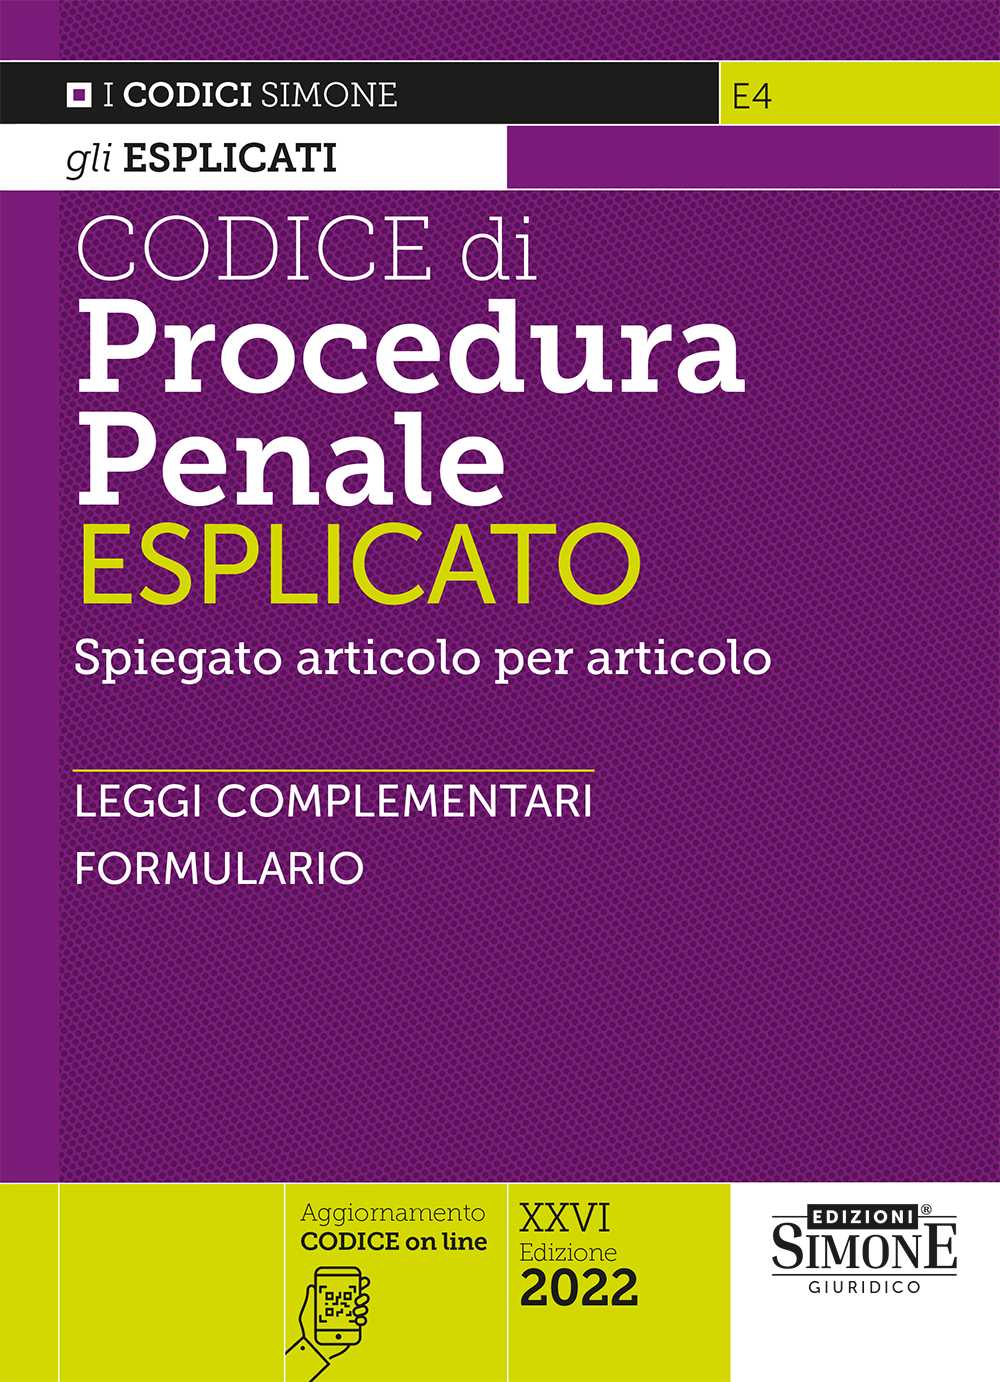 Codice di Procedura Penale Esplicato - E4